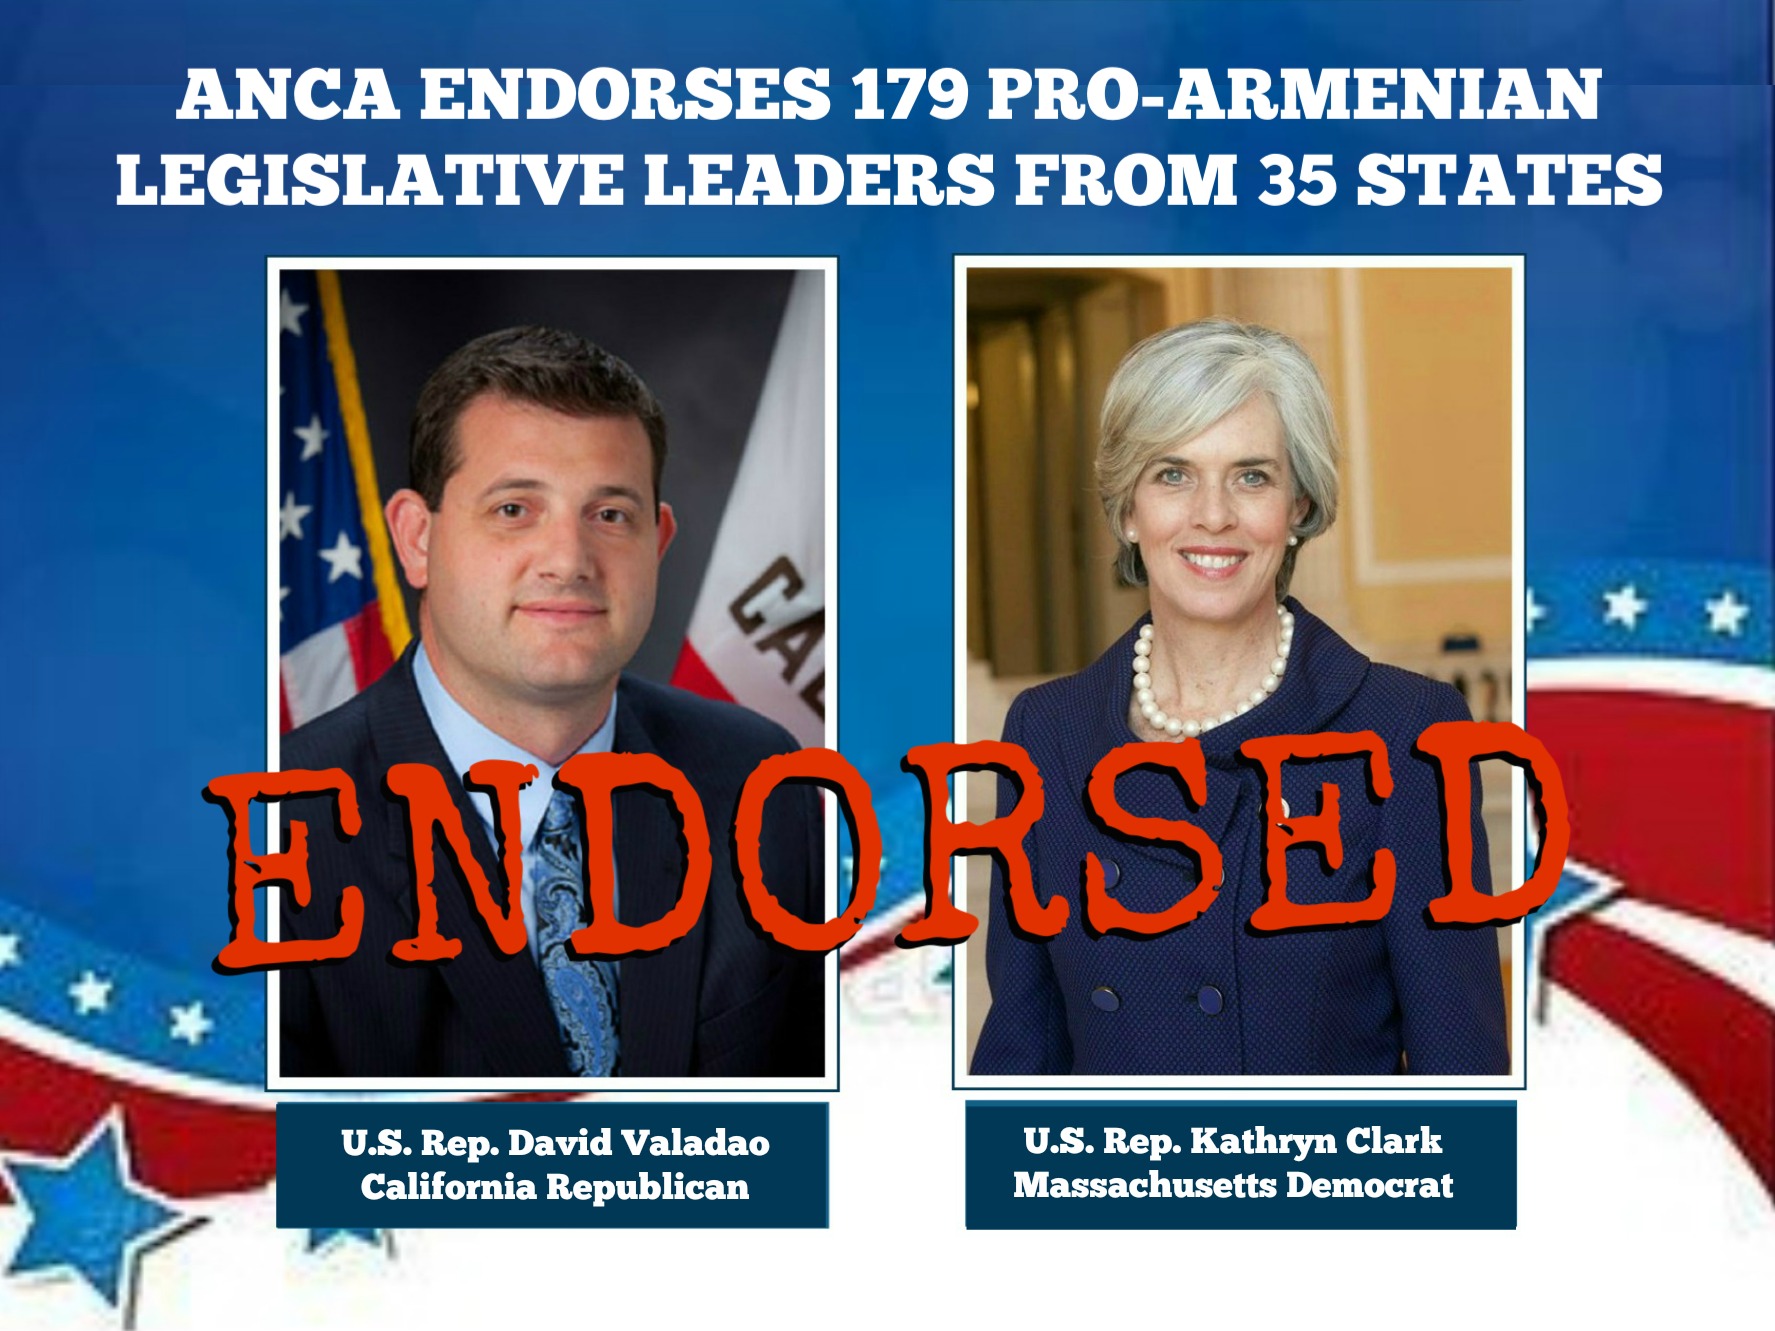 Pro-Armenia/Artsakh Senate and House Leaders Score ANCA Endorsements